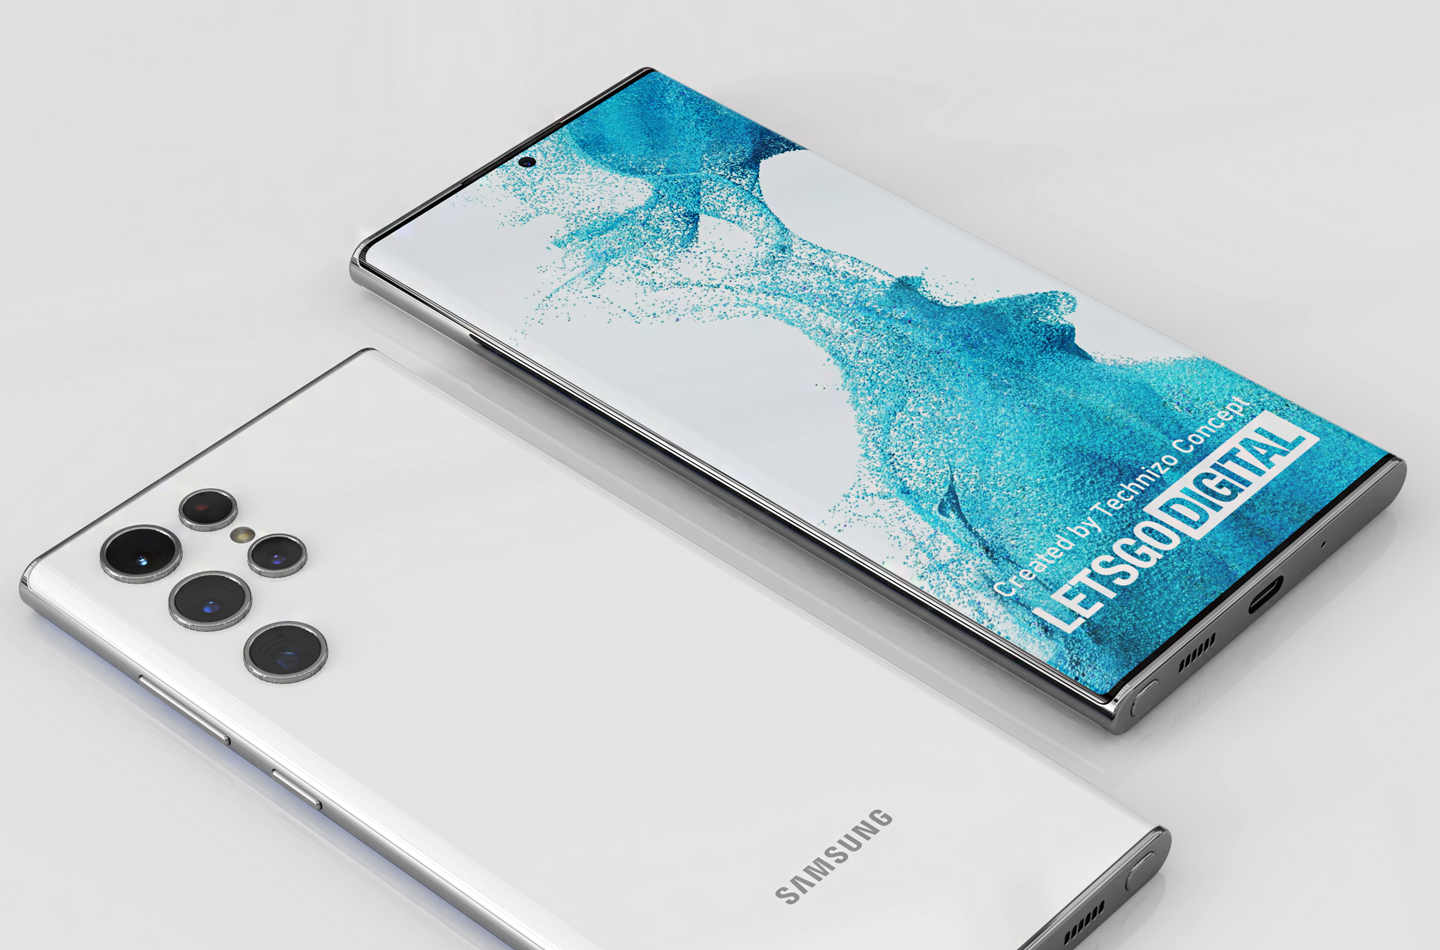 Cập nhật ngay bộ sưu tập Galaxy S22 Wallpaper từ Samsung để trang trí cho chiếc điện thoại của bạn. Với những mẫu thiết kế mới nhất, giờ đây bạn đã có ngay những hình nền ấn tượng cho dế yêu của mình.